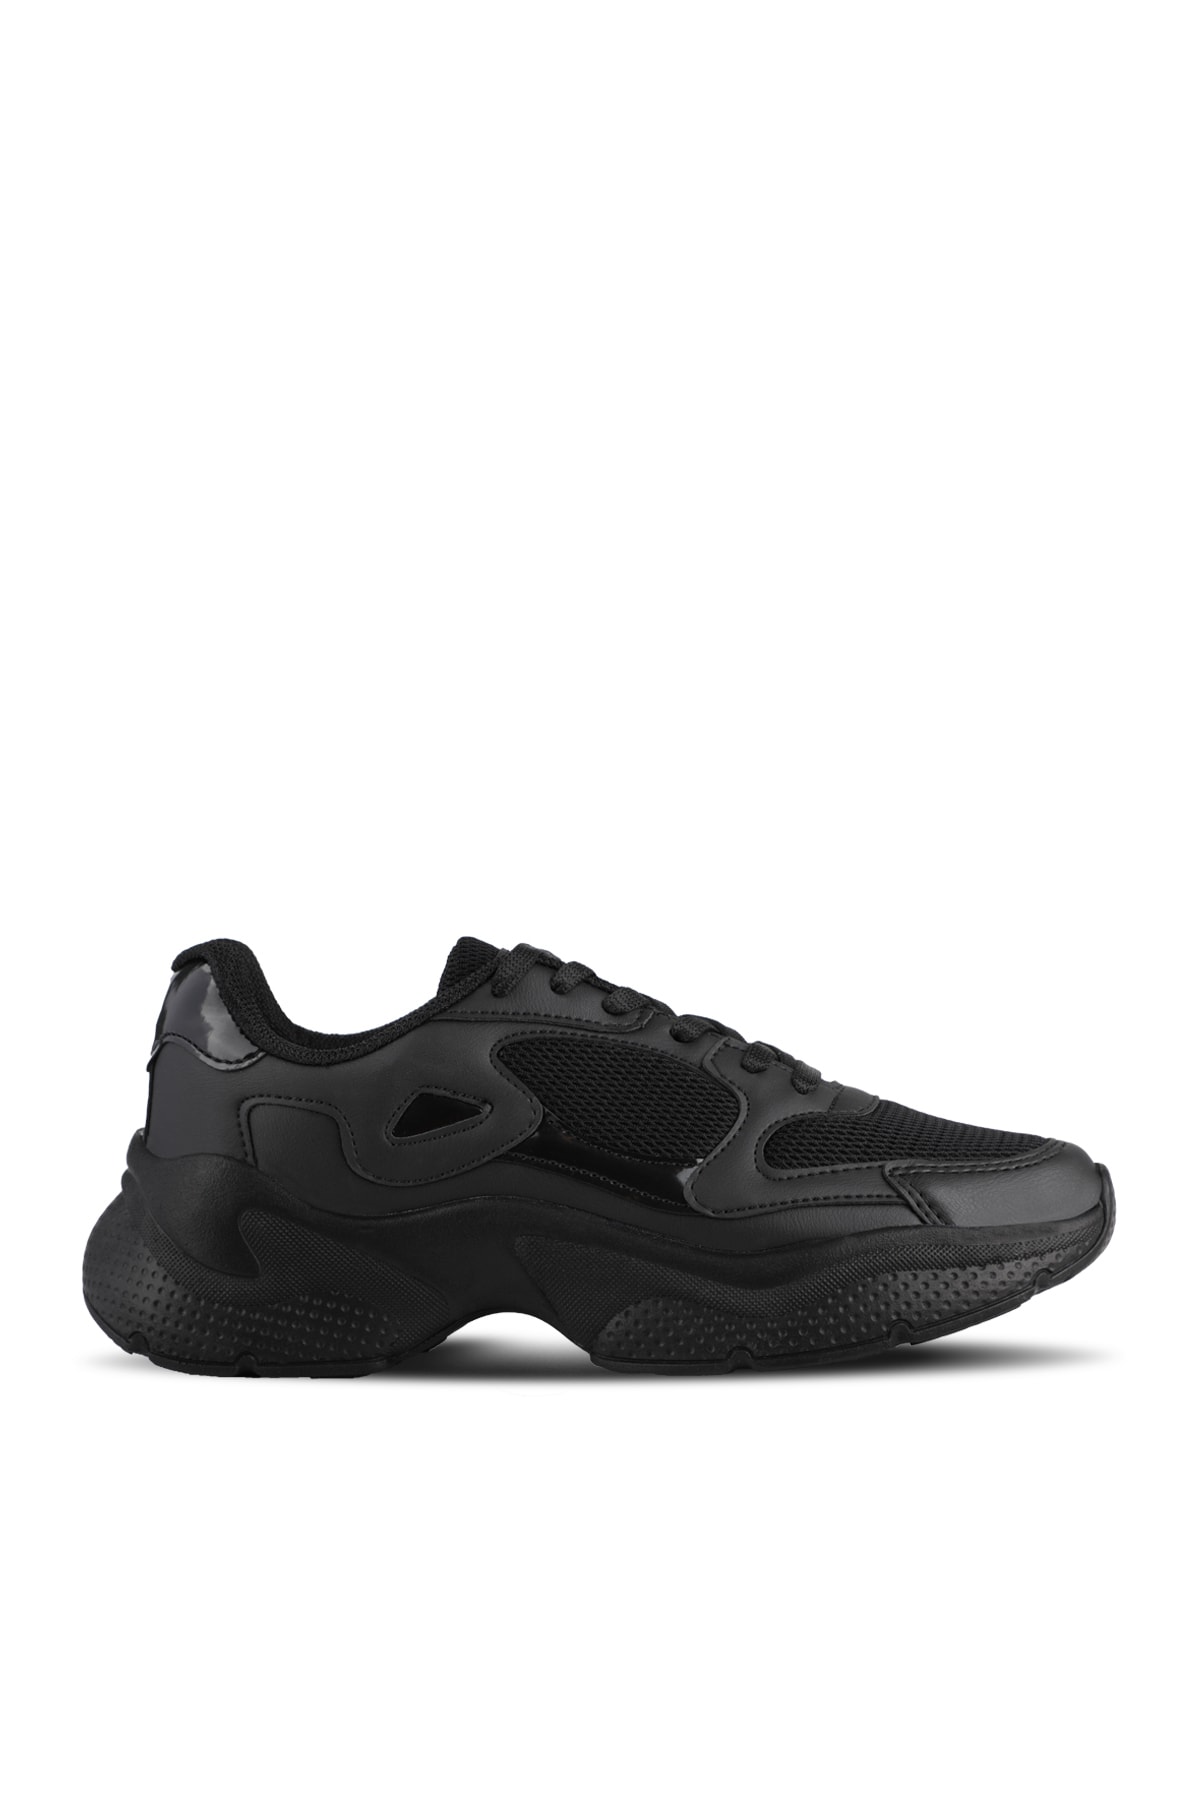 Slazenger Zackary Sneaker Women's Shoes Black / Black